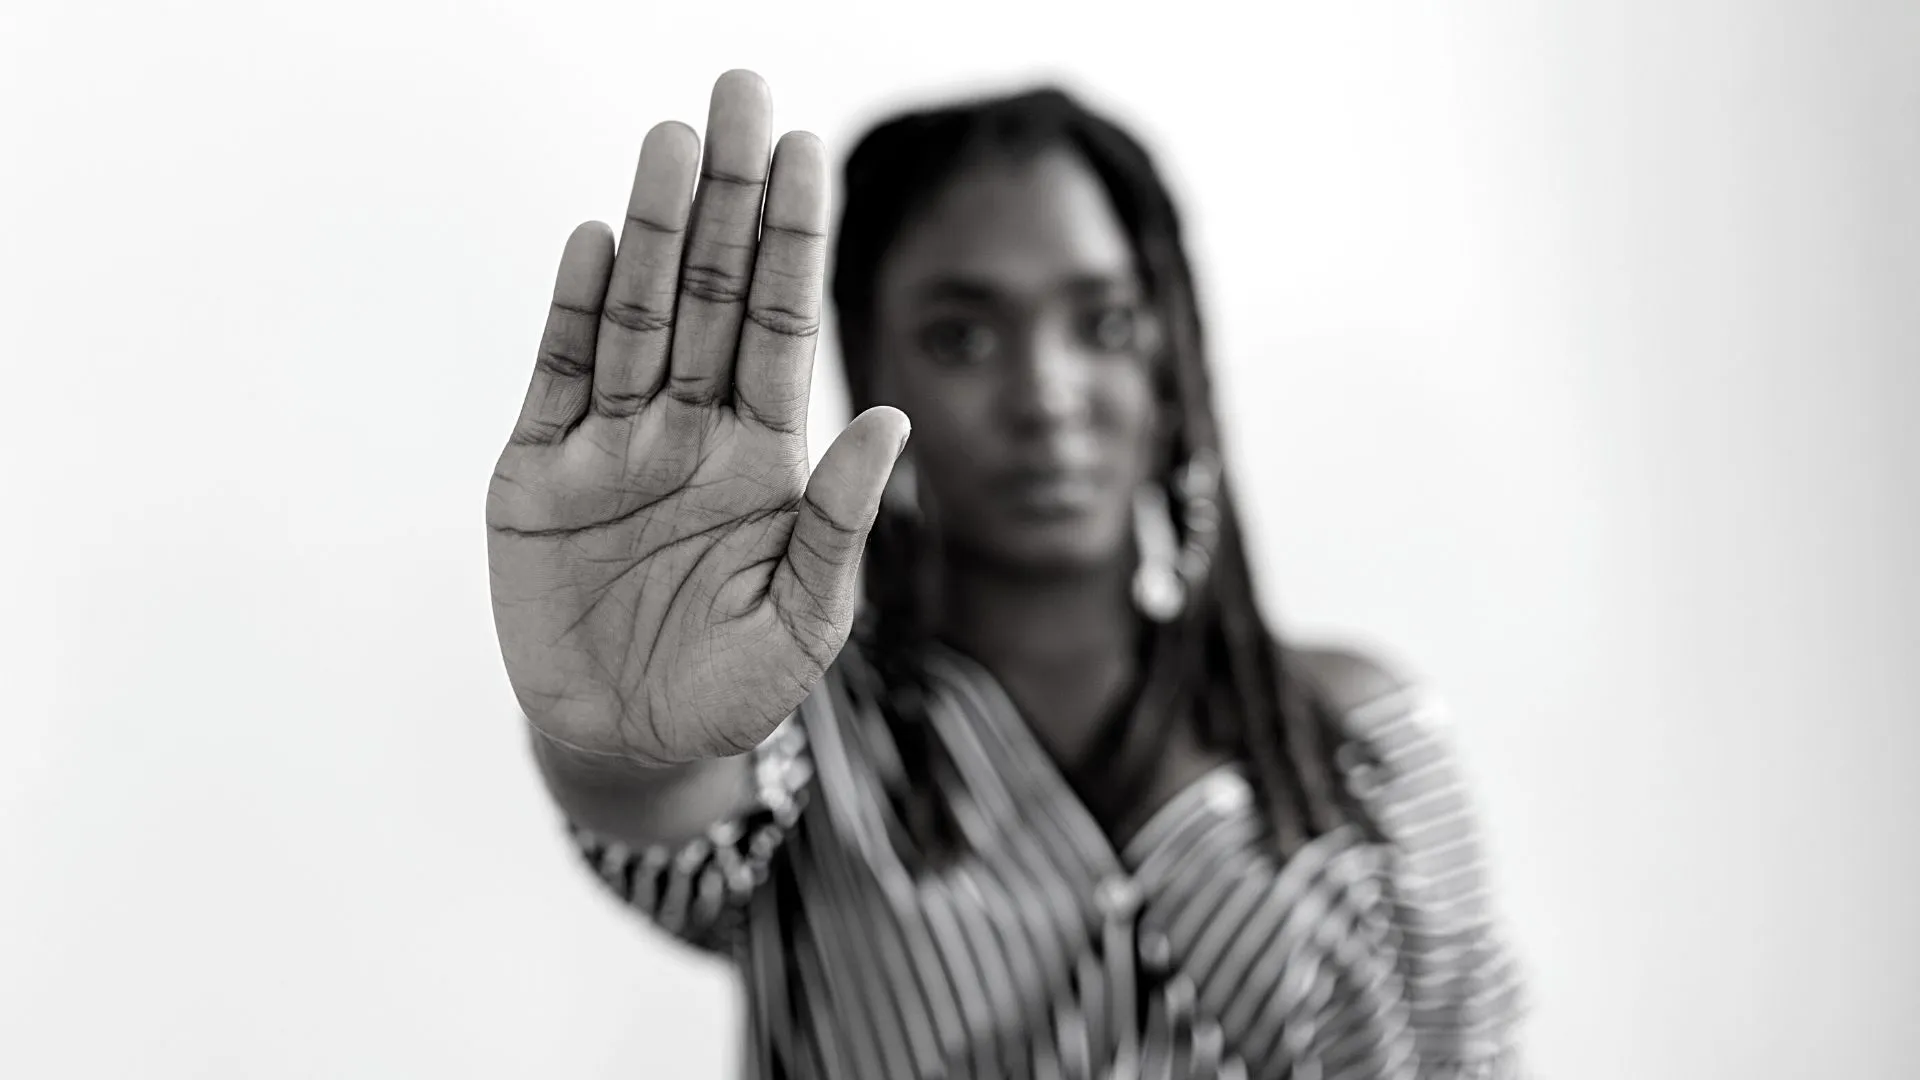 Imagem em preto e branco com mulher negra fazendo sinal de pare com a mão direita para simbolizar a necessidade de combater a desigualdade social.